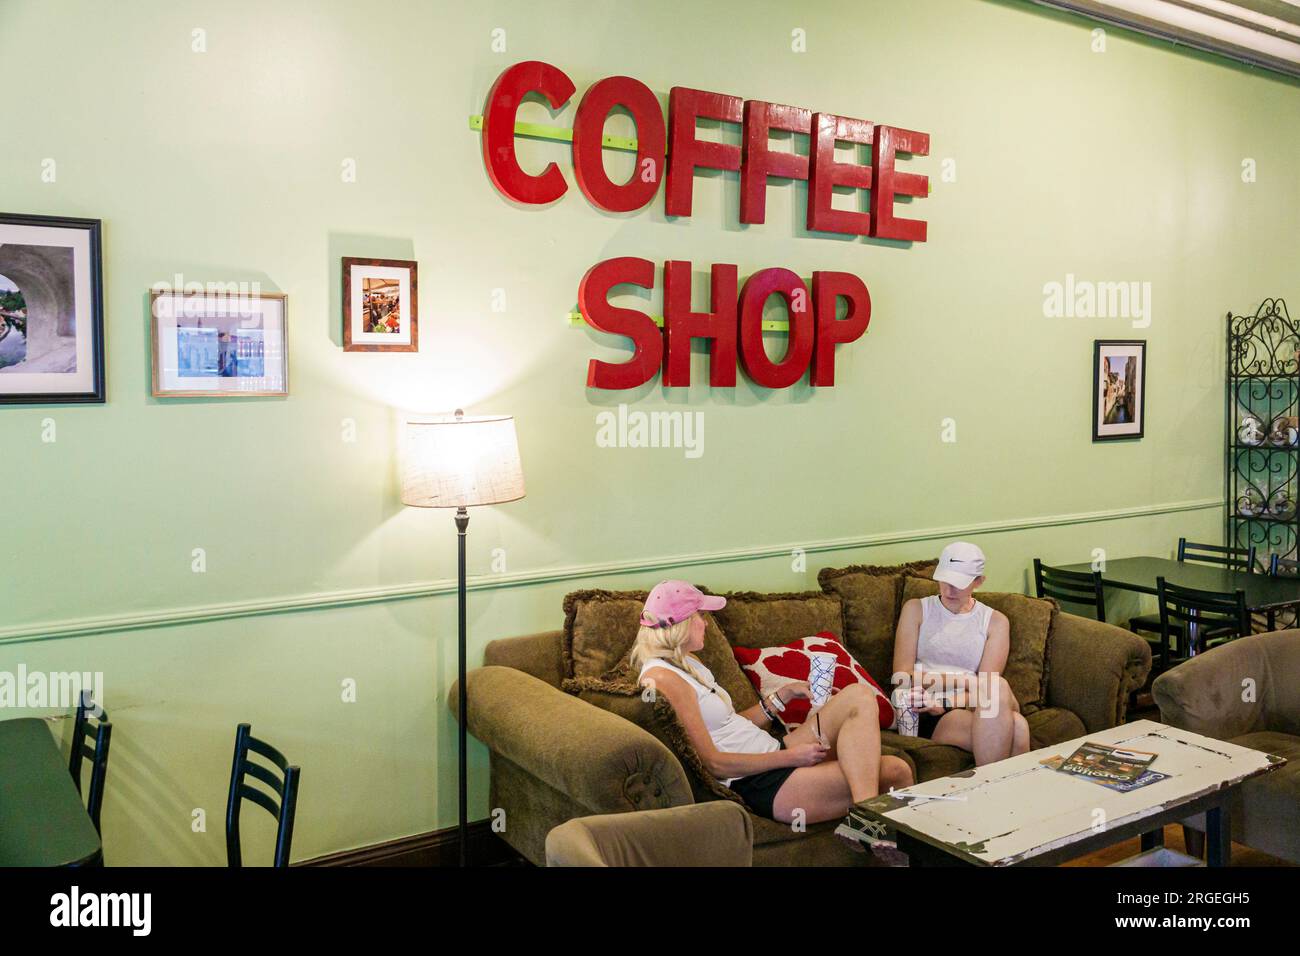 Shelby North Carolina, LilyBean Microroasted Coffee Cafe, generisches Coffee Shop Schild, weibliche Frau, Erwachsene, Freunde der Bewohner, innen indo Stockfoto